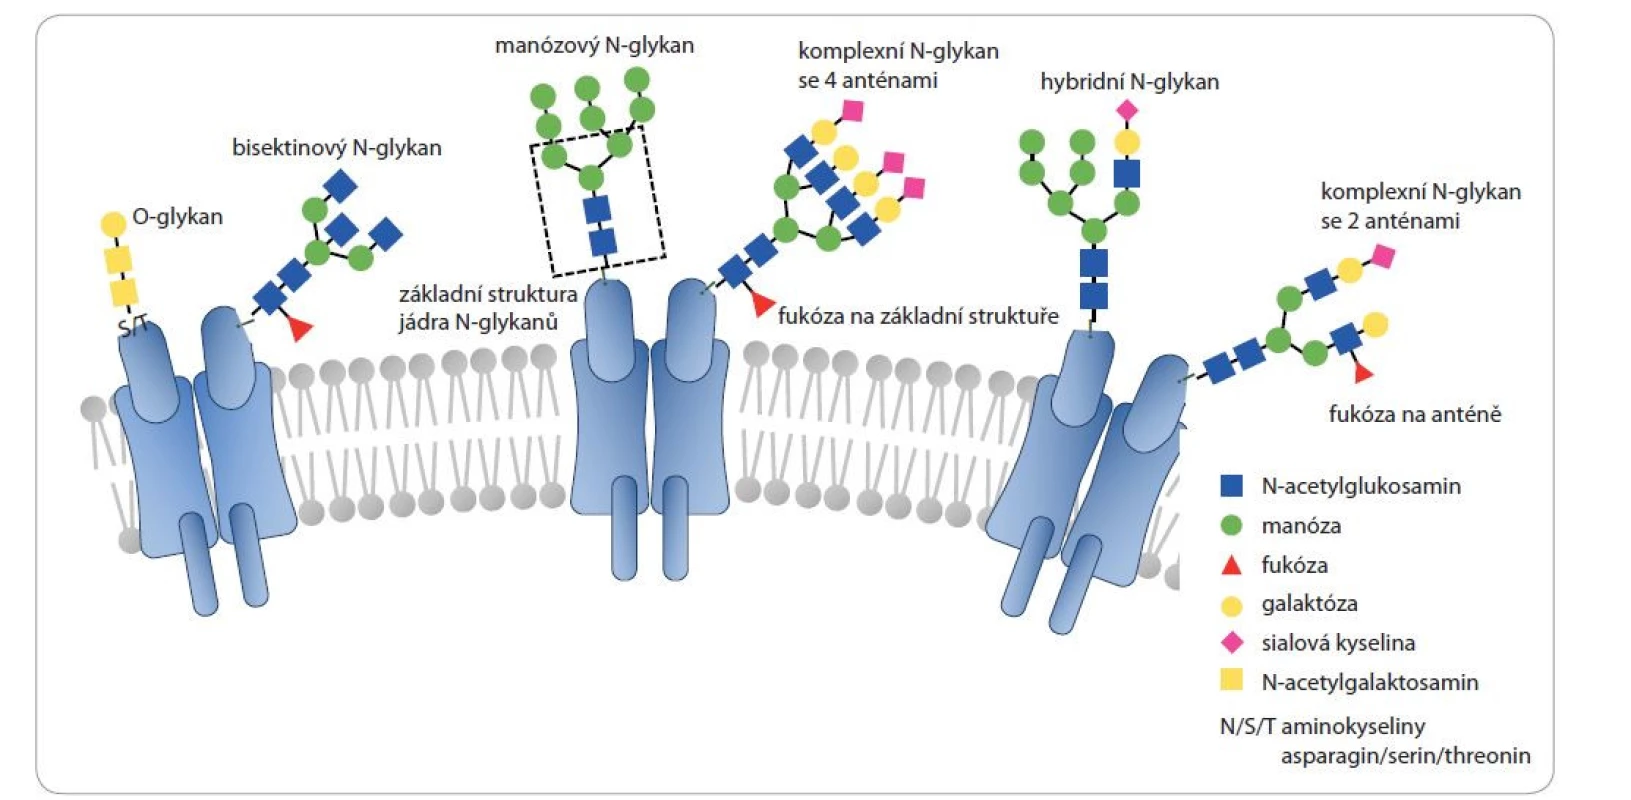 Jednotlivé typy glykosylací přítomných na lidských proteinech a typické struktury, na které je v tomto přehledovém článku
odkazováno.